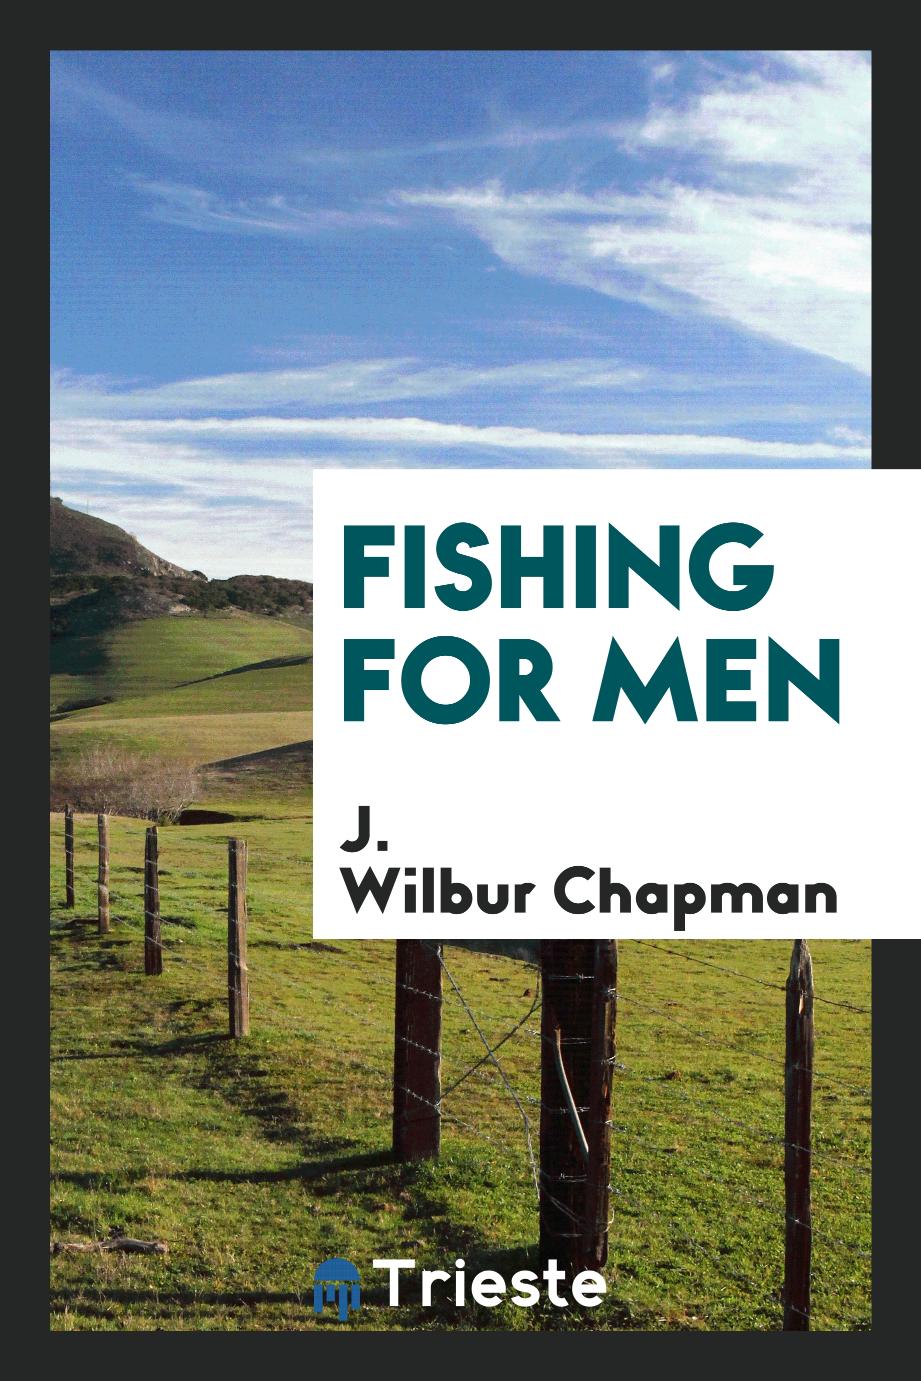 Fishing for men